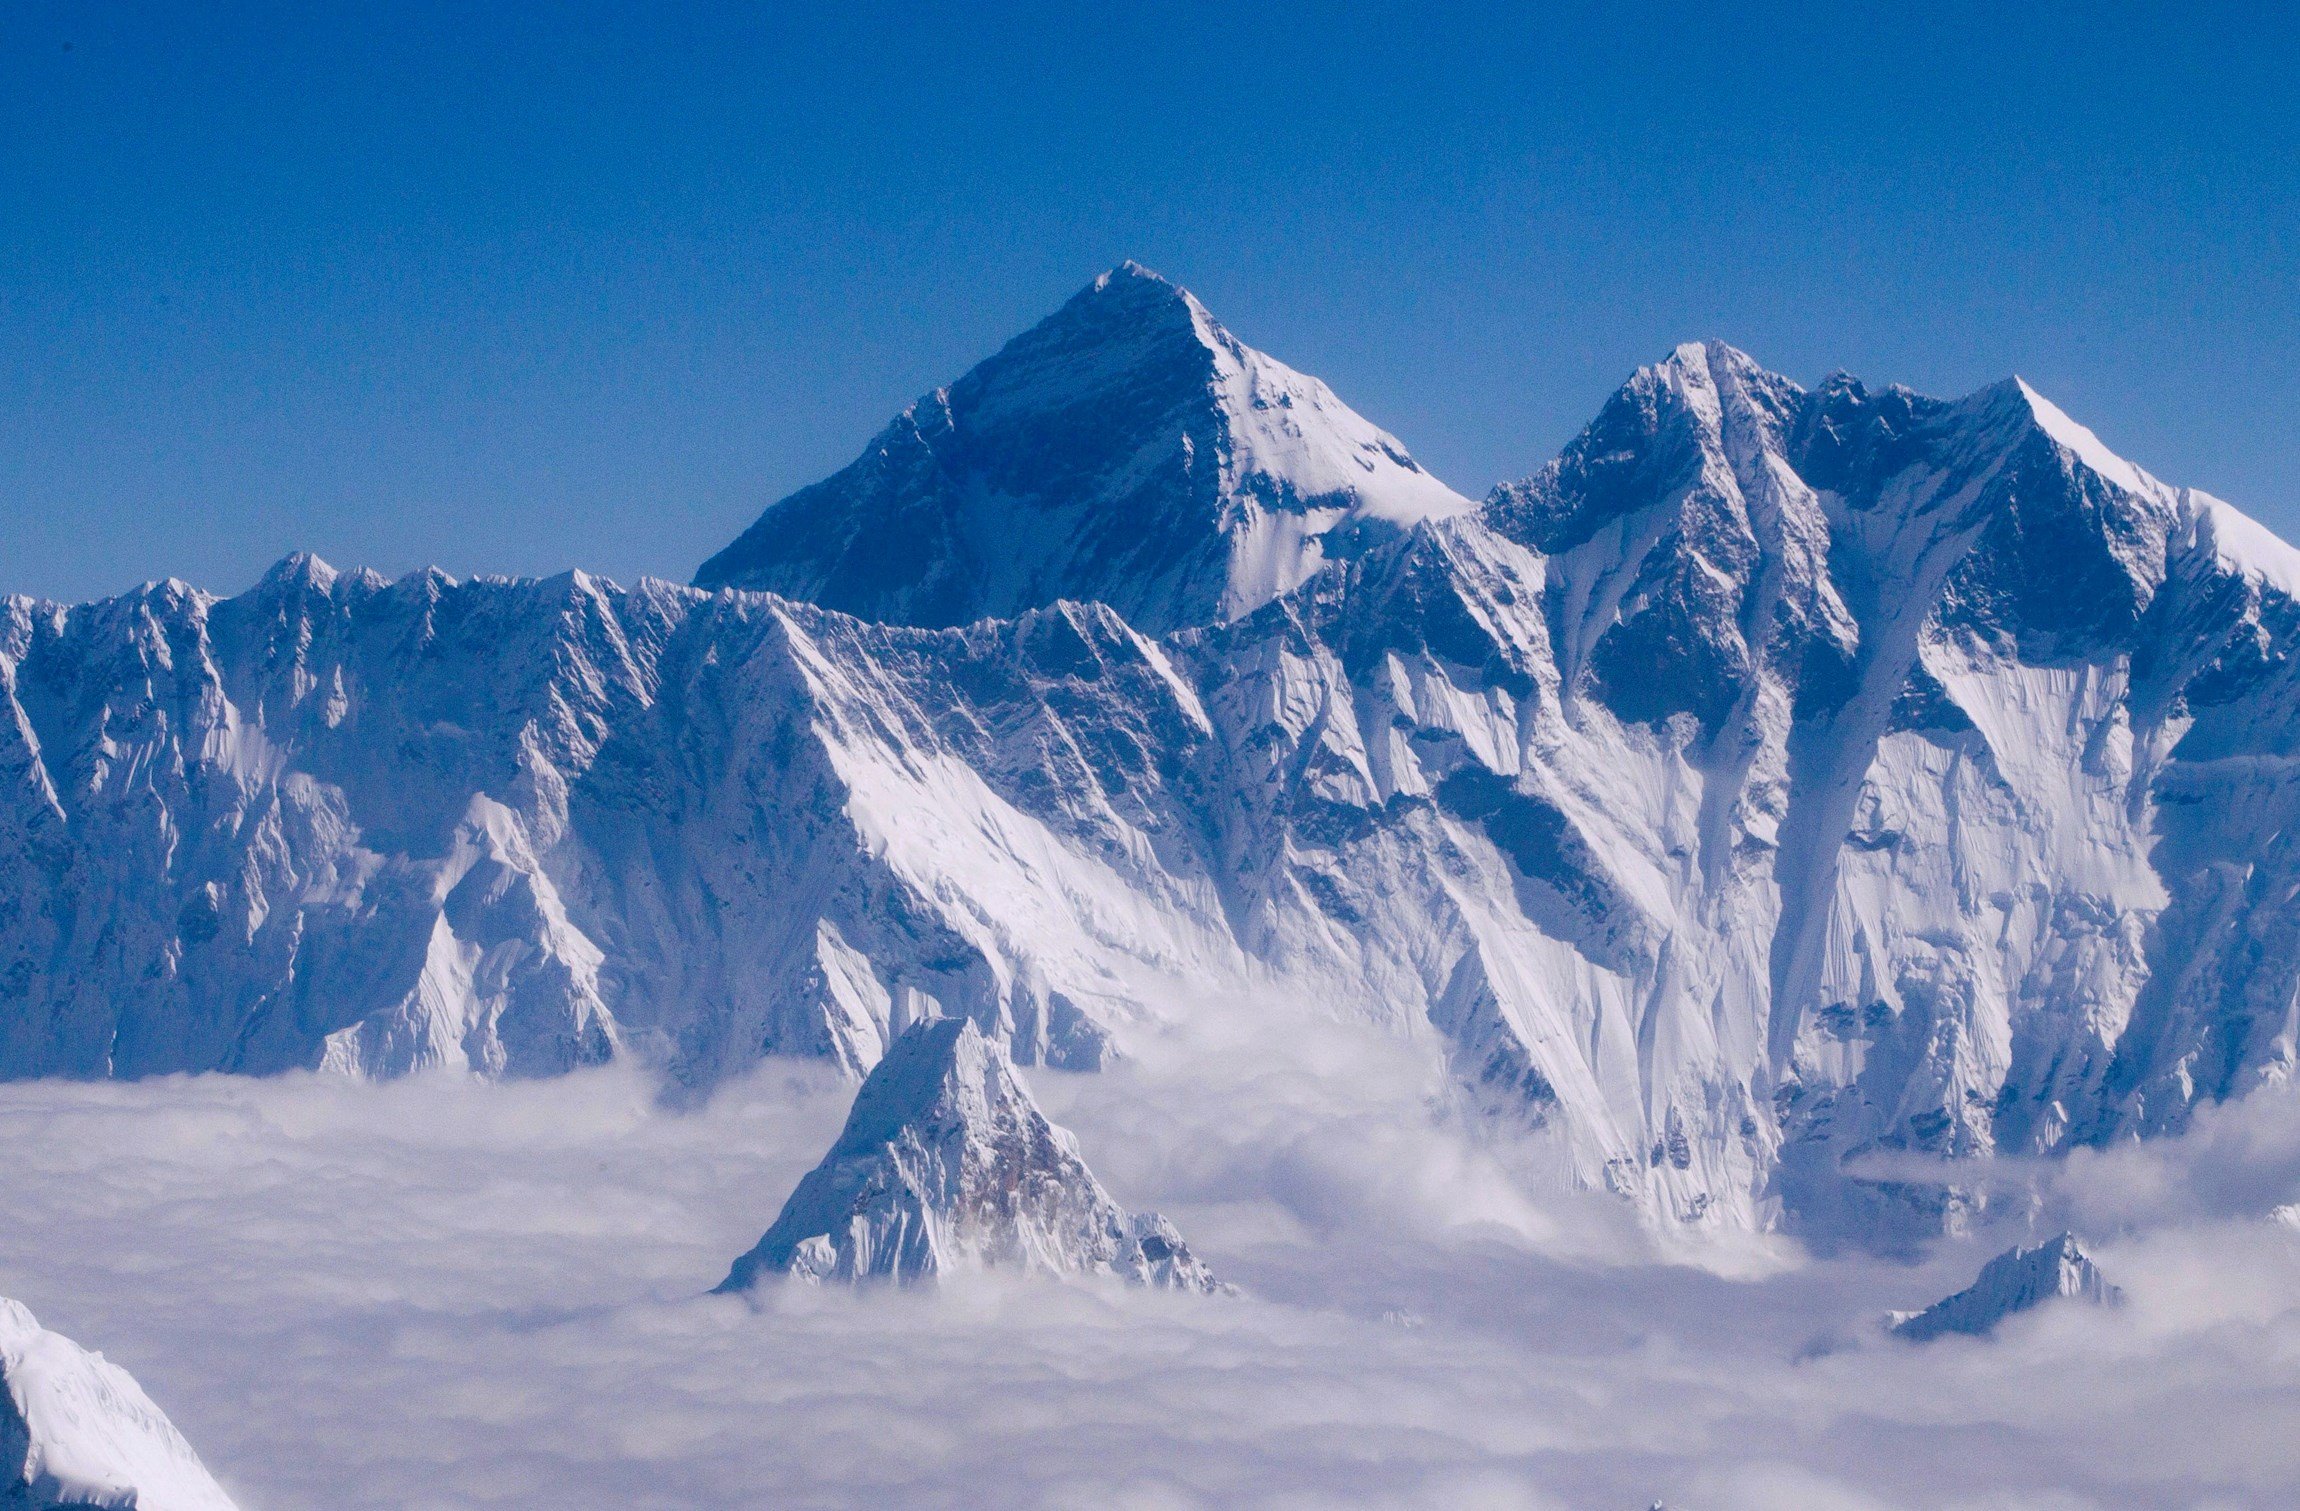 Fi a la disputa entre el Nepal i la Xina: l'Everest fa 8.848,86 metres